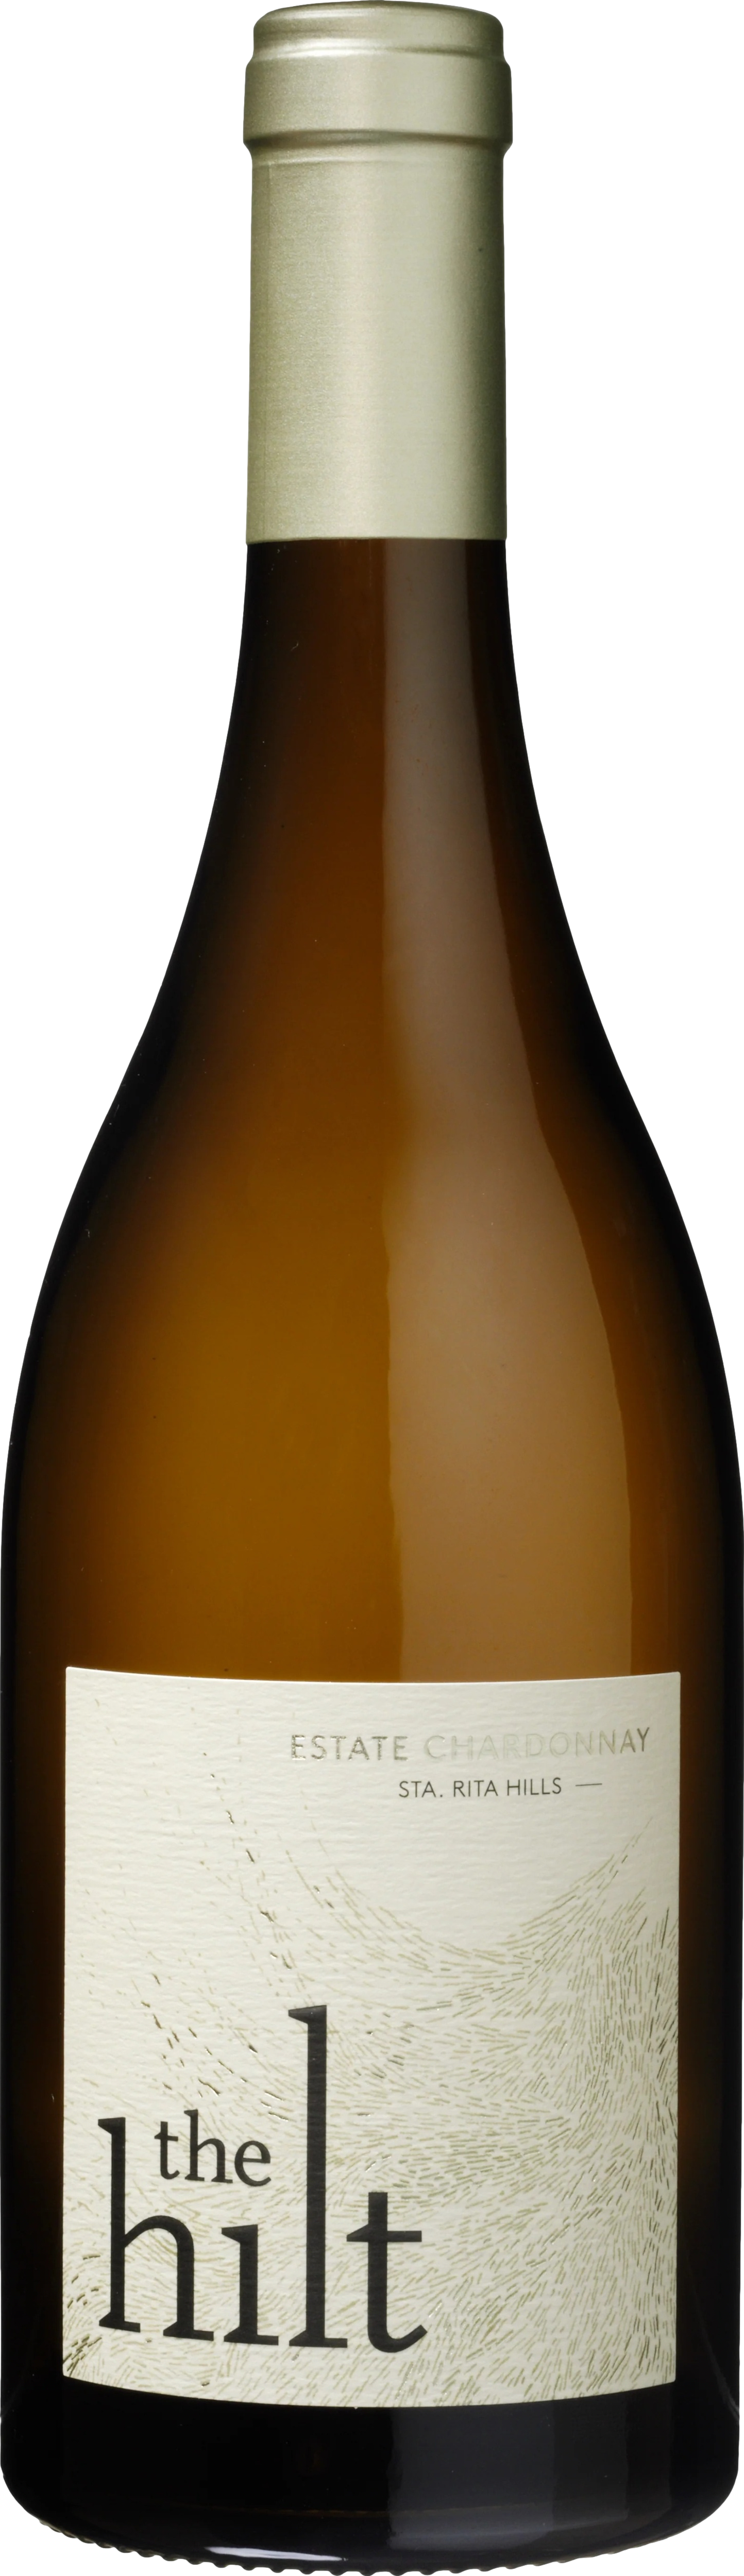 The Hilt Estate Chardonnay 2019 Bílé 13.0% 0.75 l